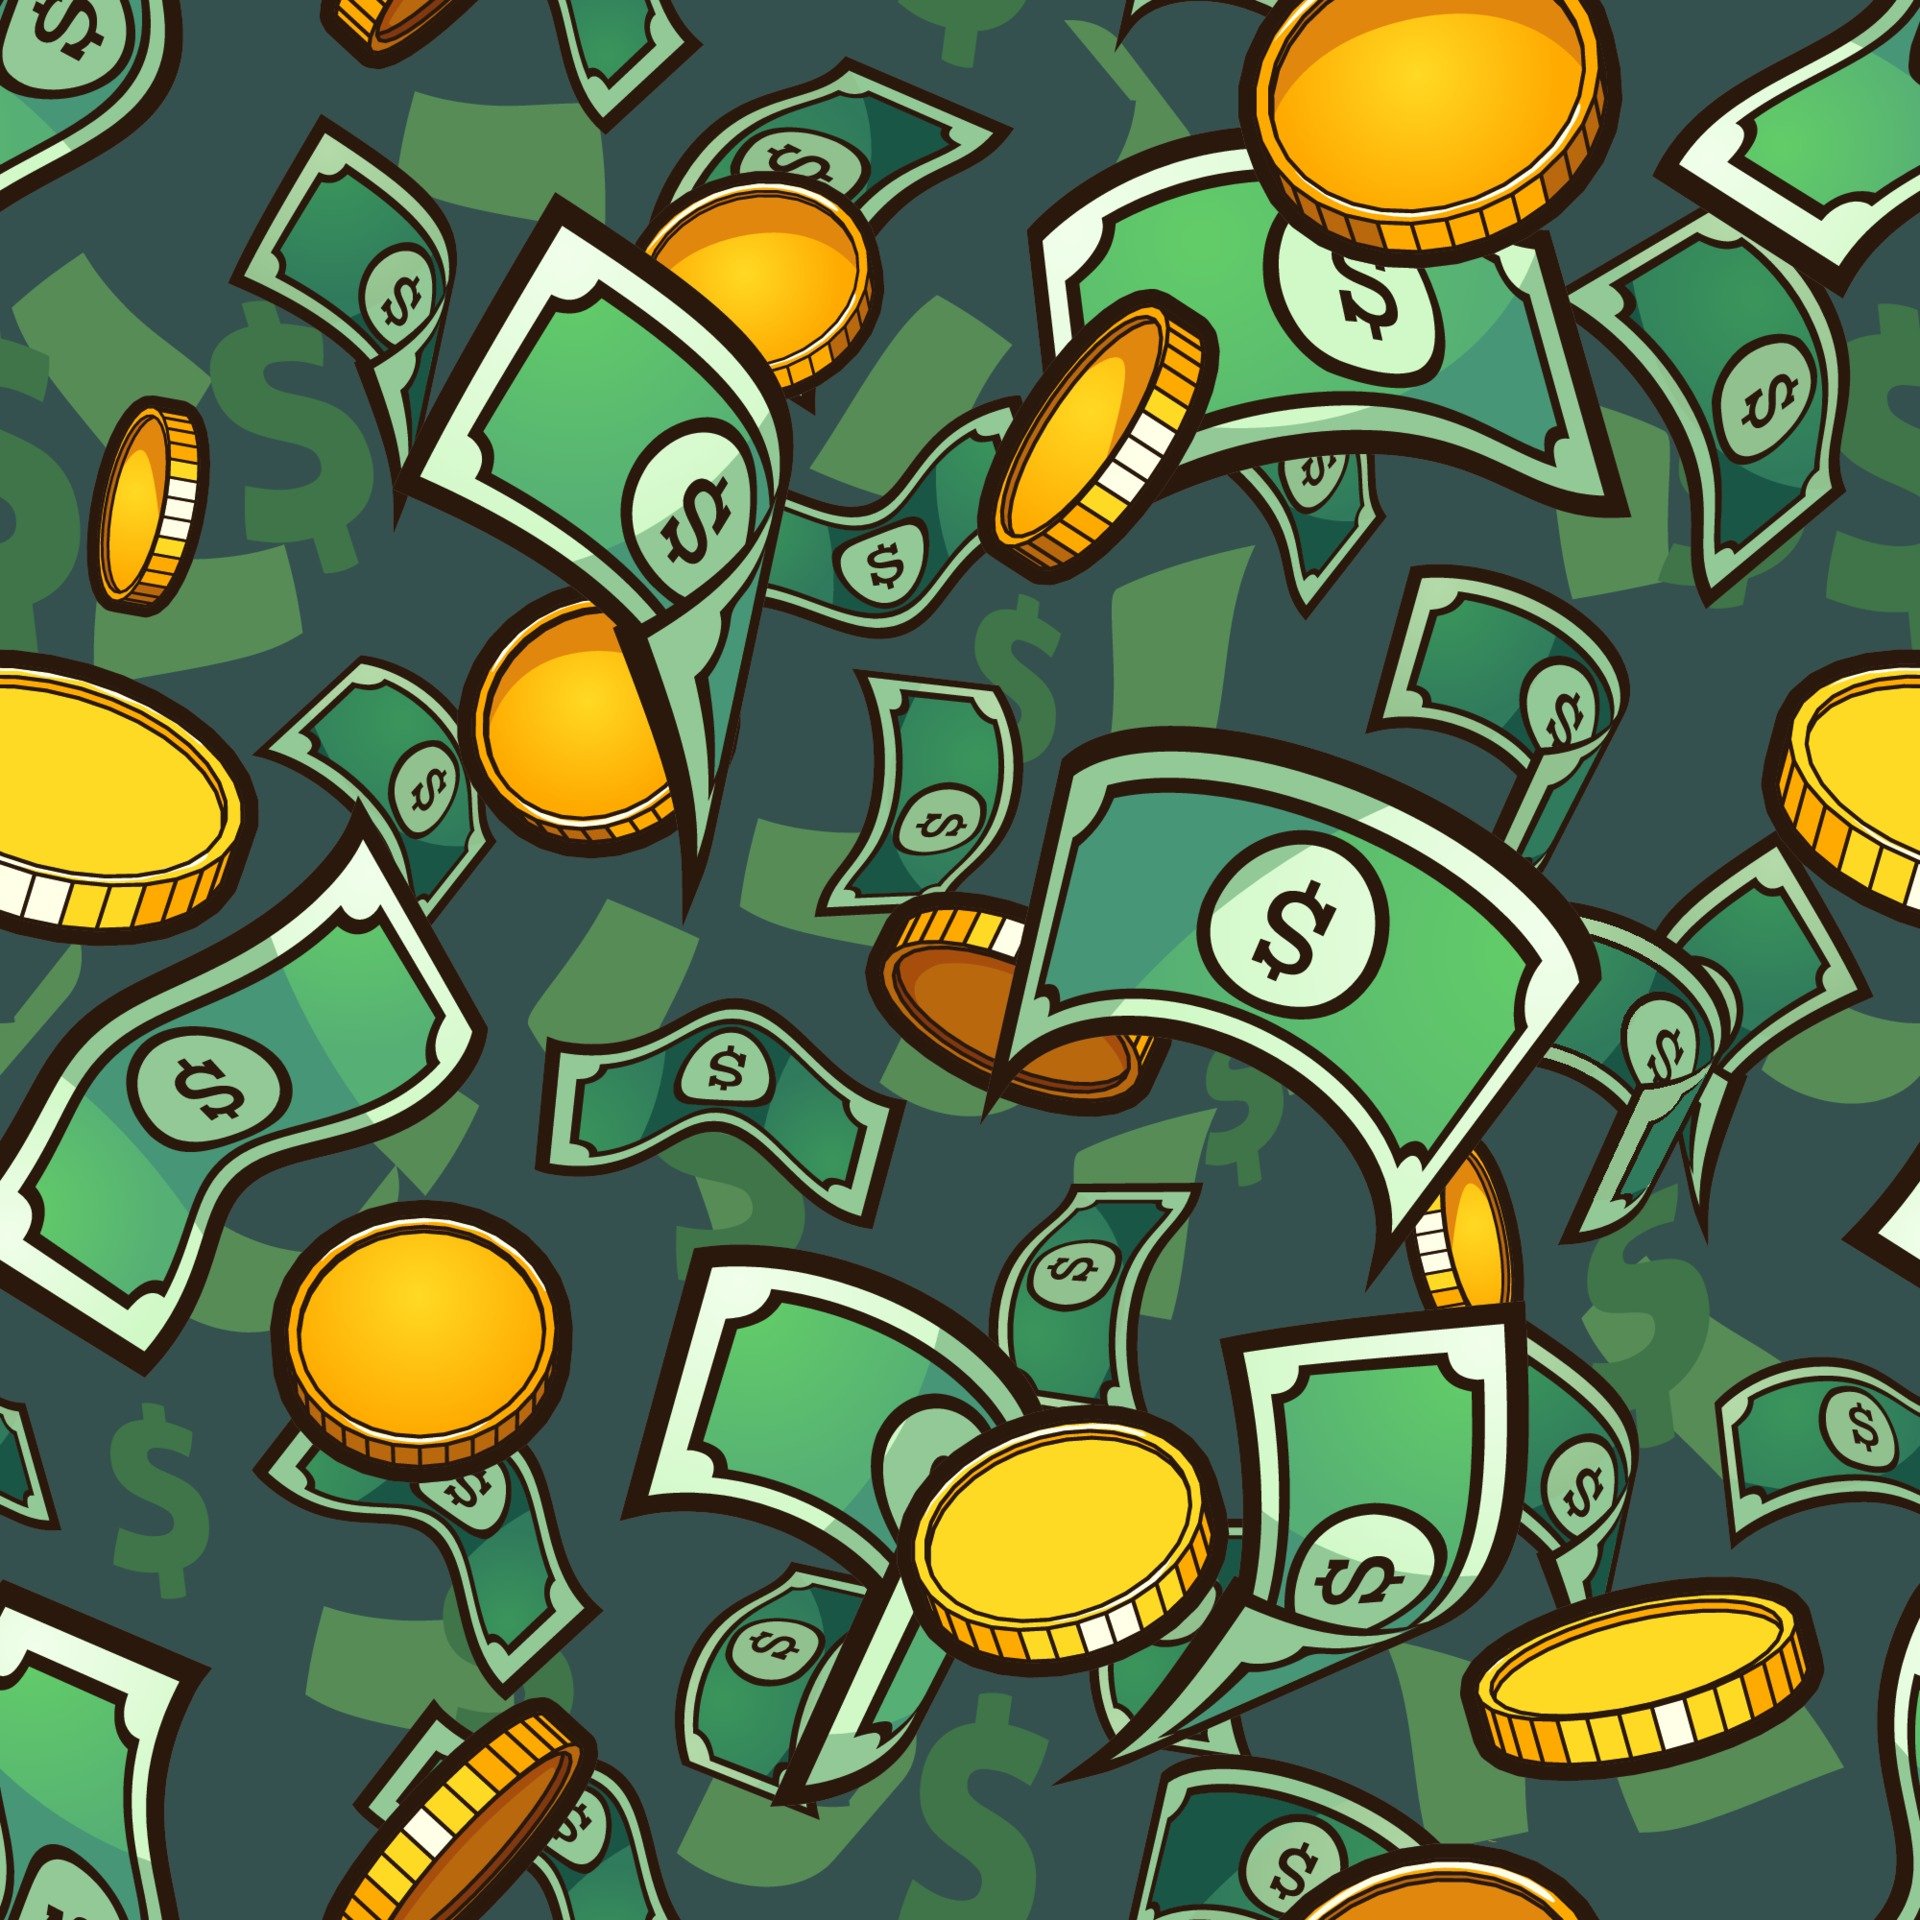 Деньги на зеленом фоне